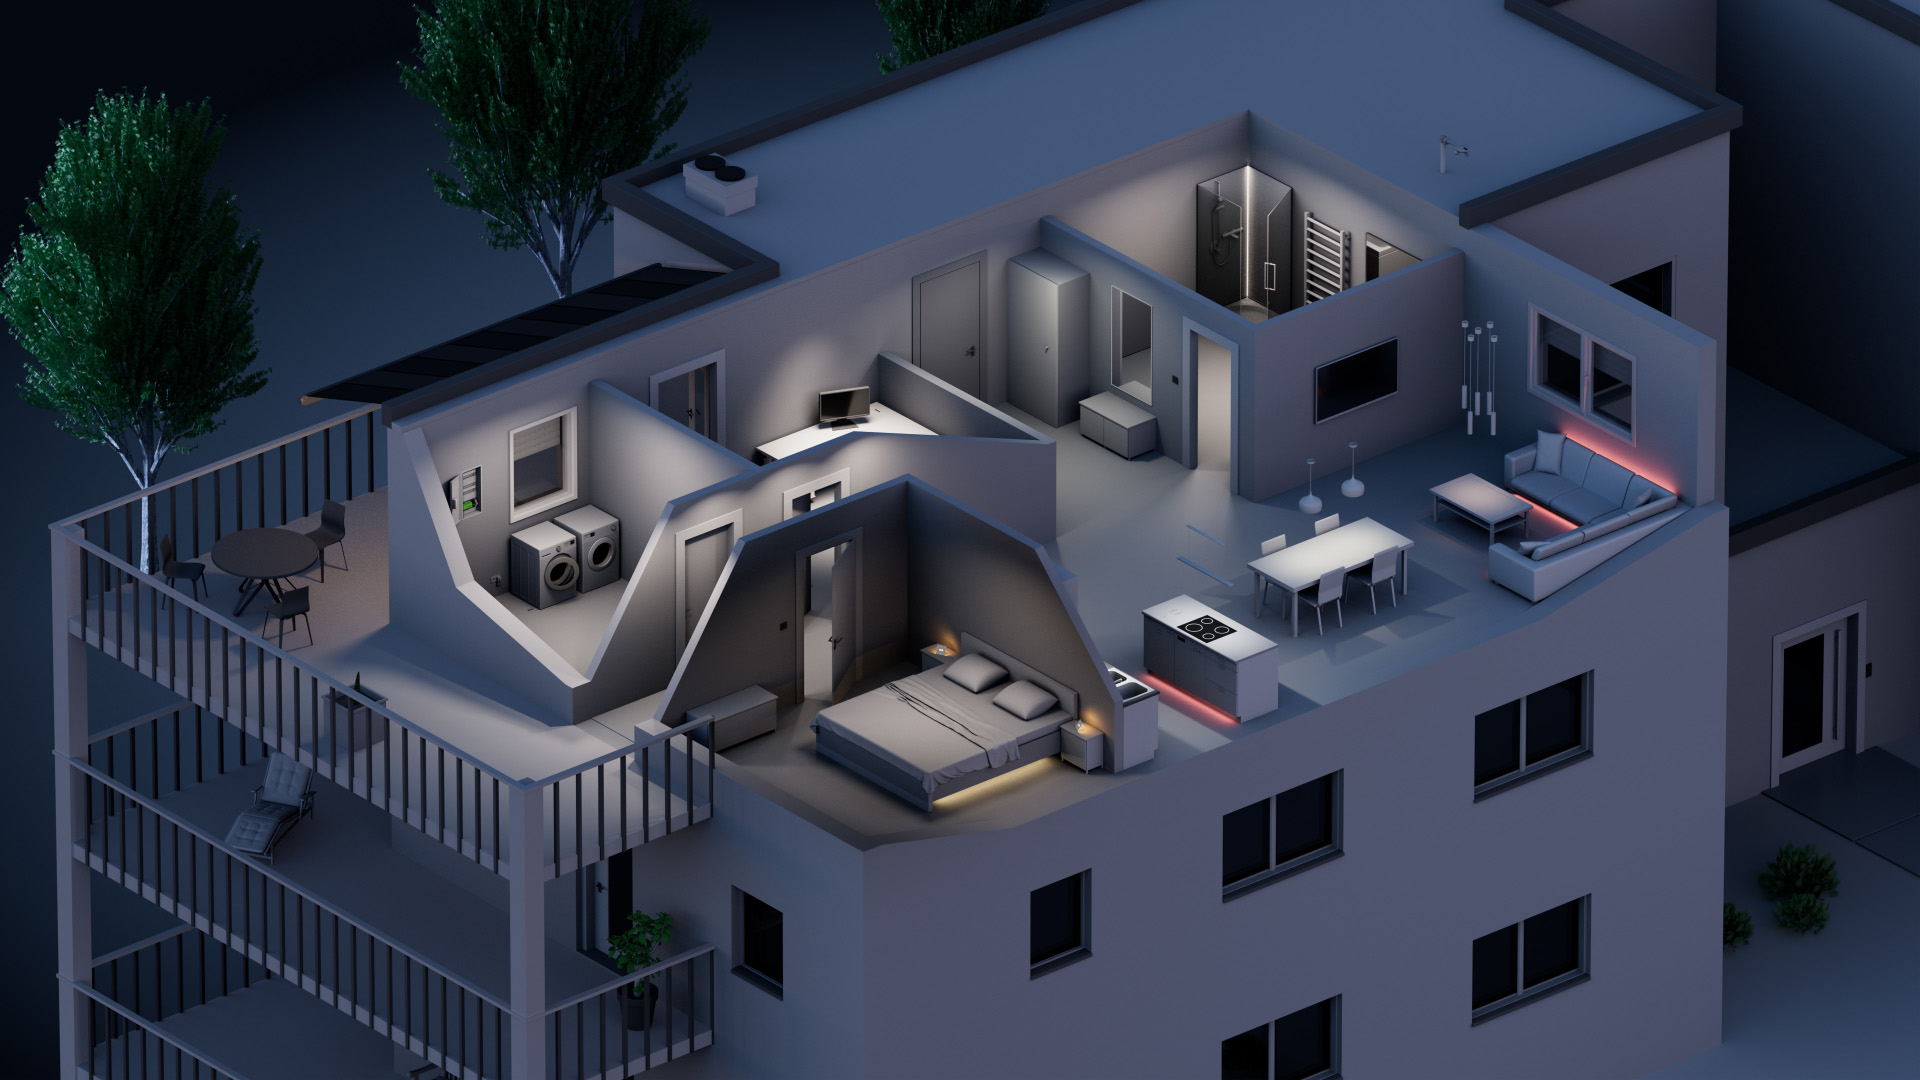 Na tomto obrázku je vidět náhled do bytové jednotky. Je zde náhled do jednotlivých pokojů a jejich vybavení a osvětlení.